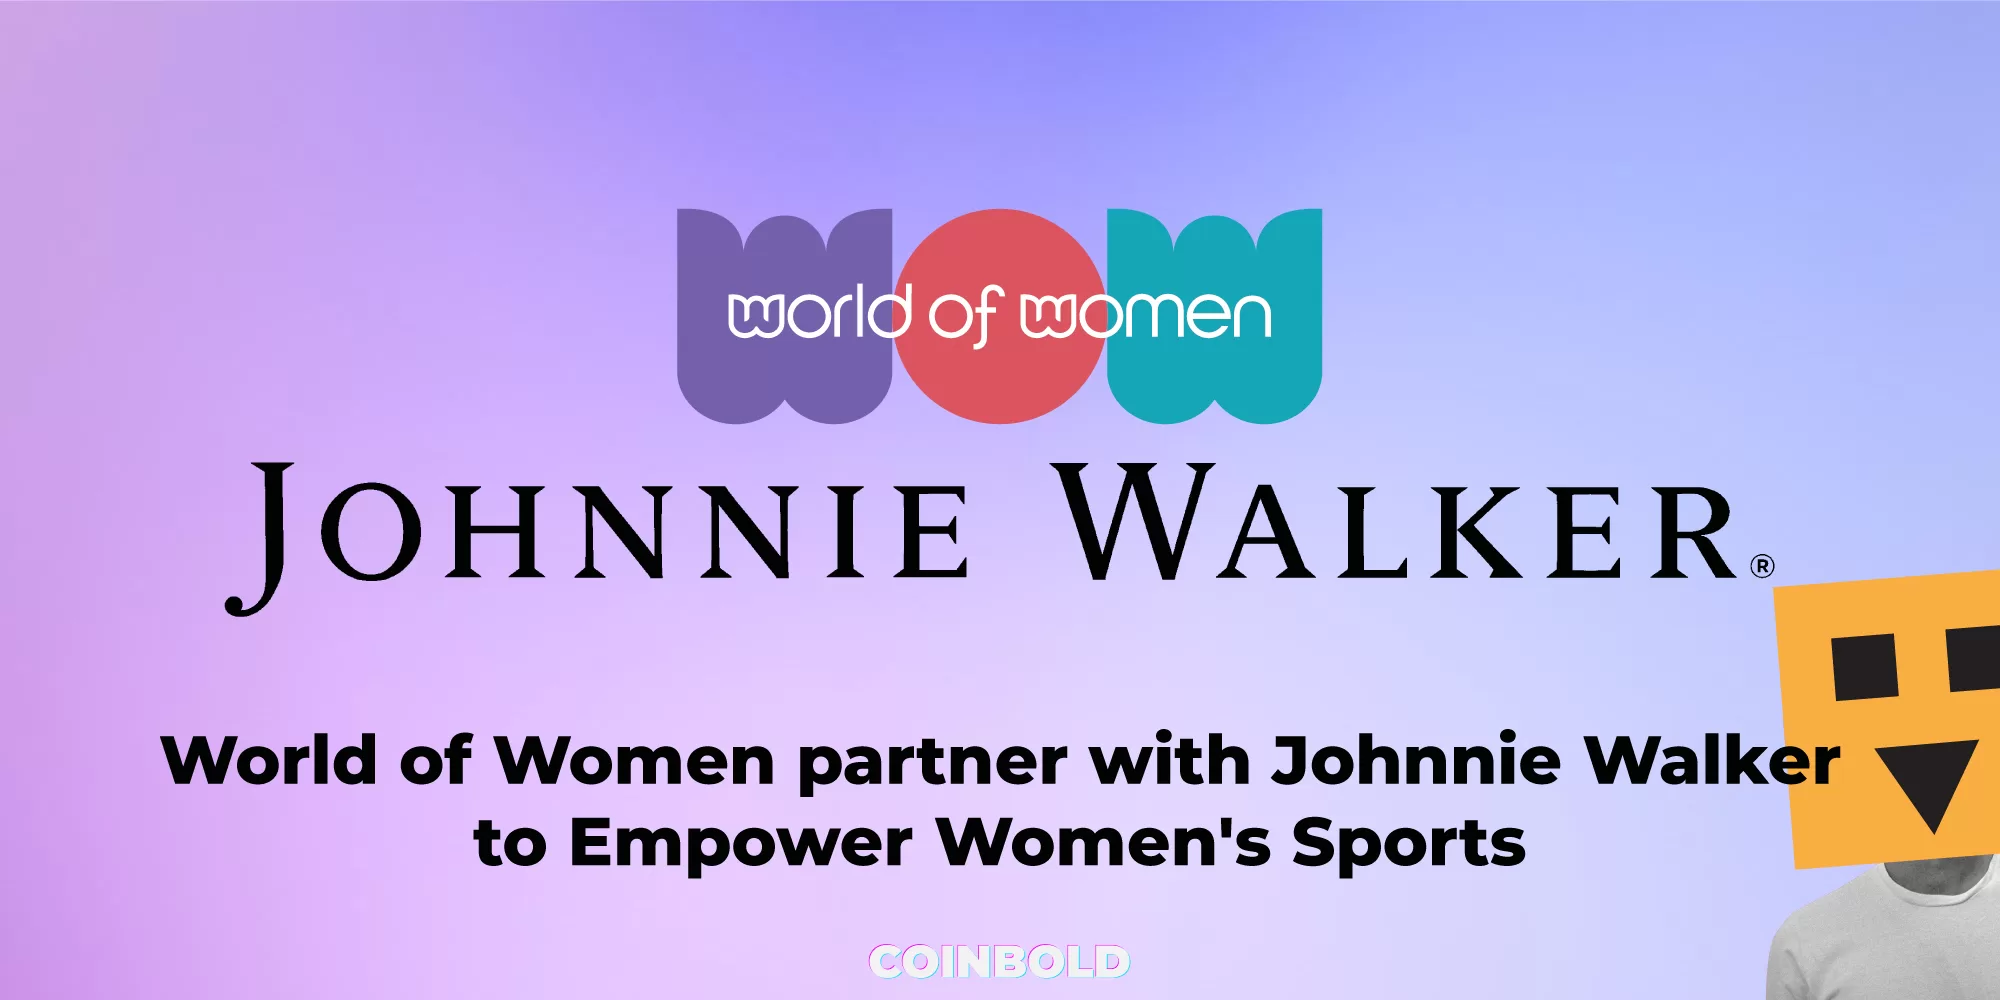 World of Women partner with Johnnie Walker to Empower Women's Sports